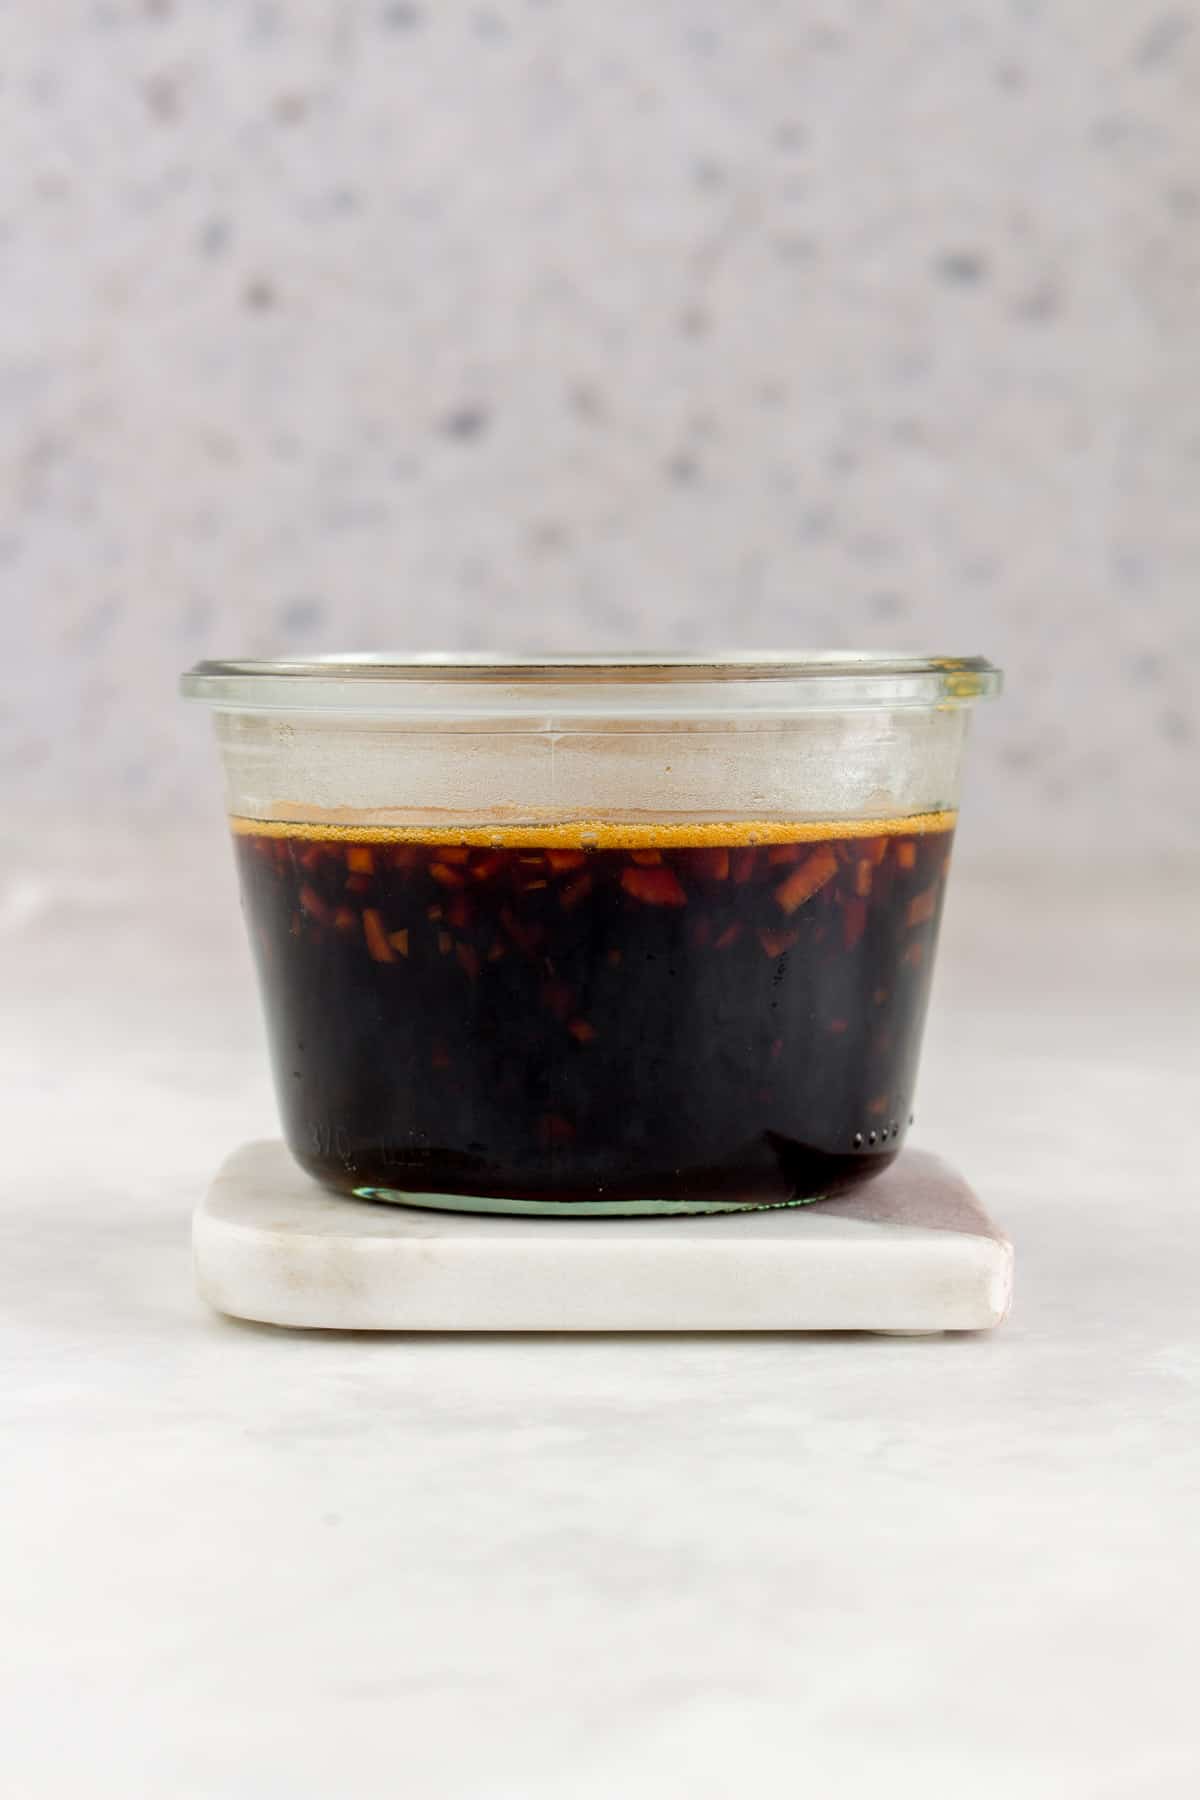 A jar of teriyaki sauce.